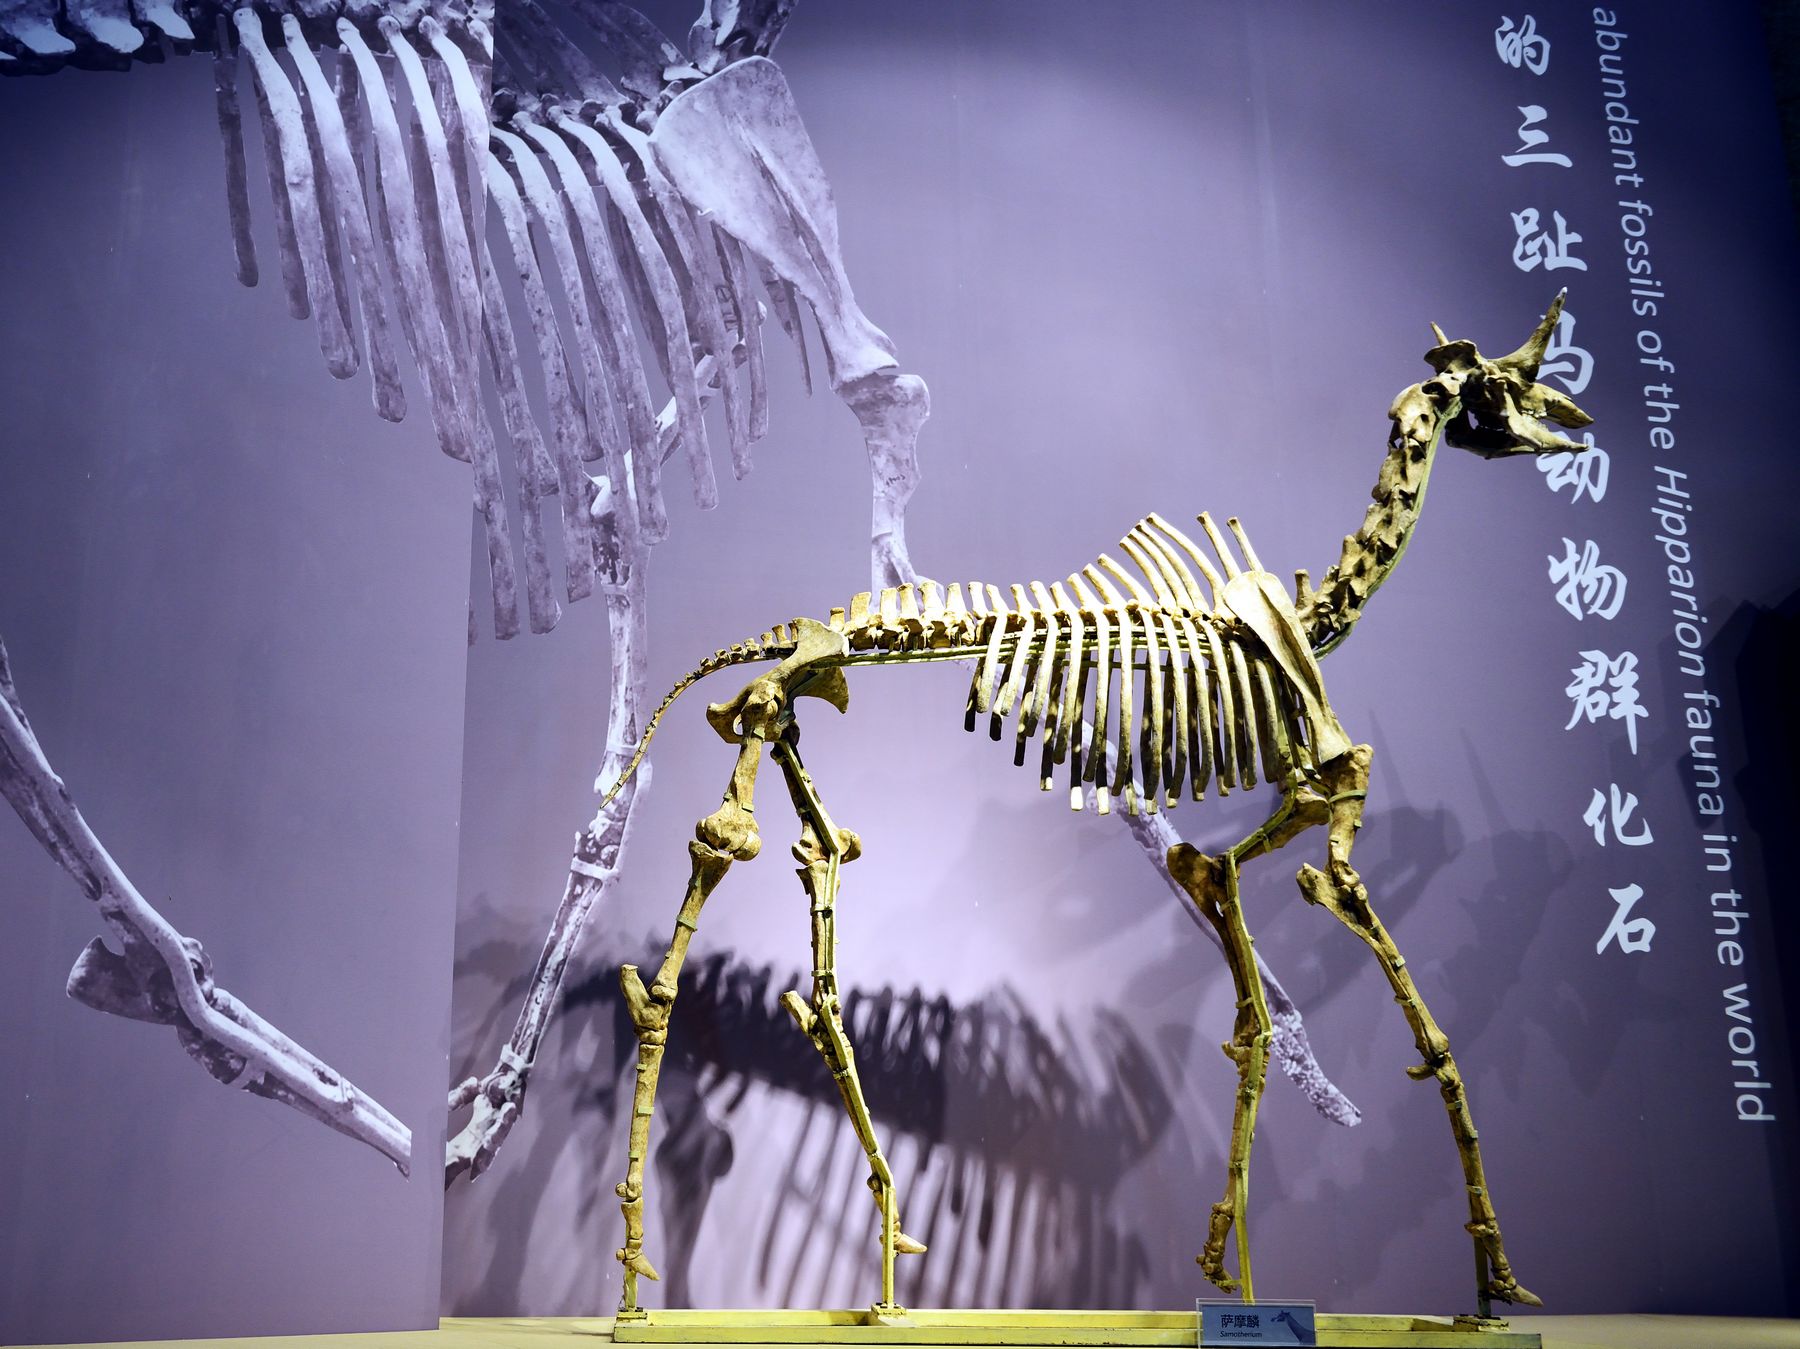 和政古动物化石博物馆 - 每日环球展览 - iMuseum